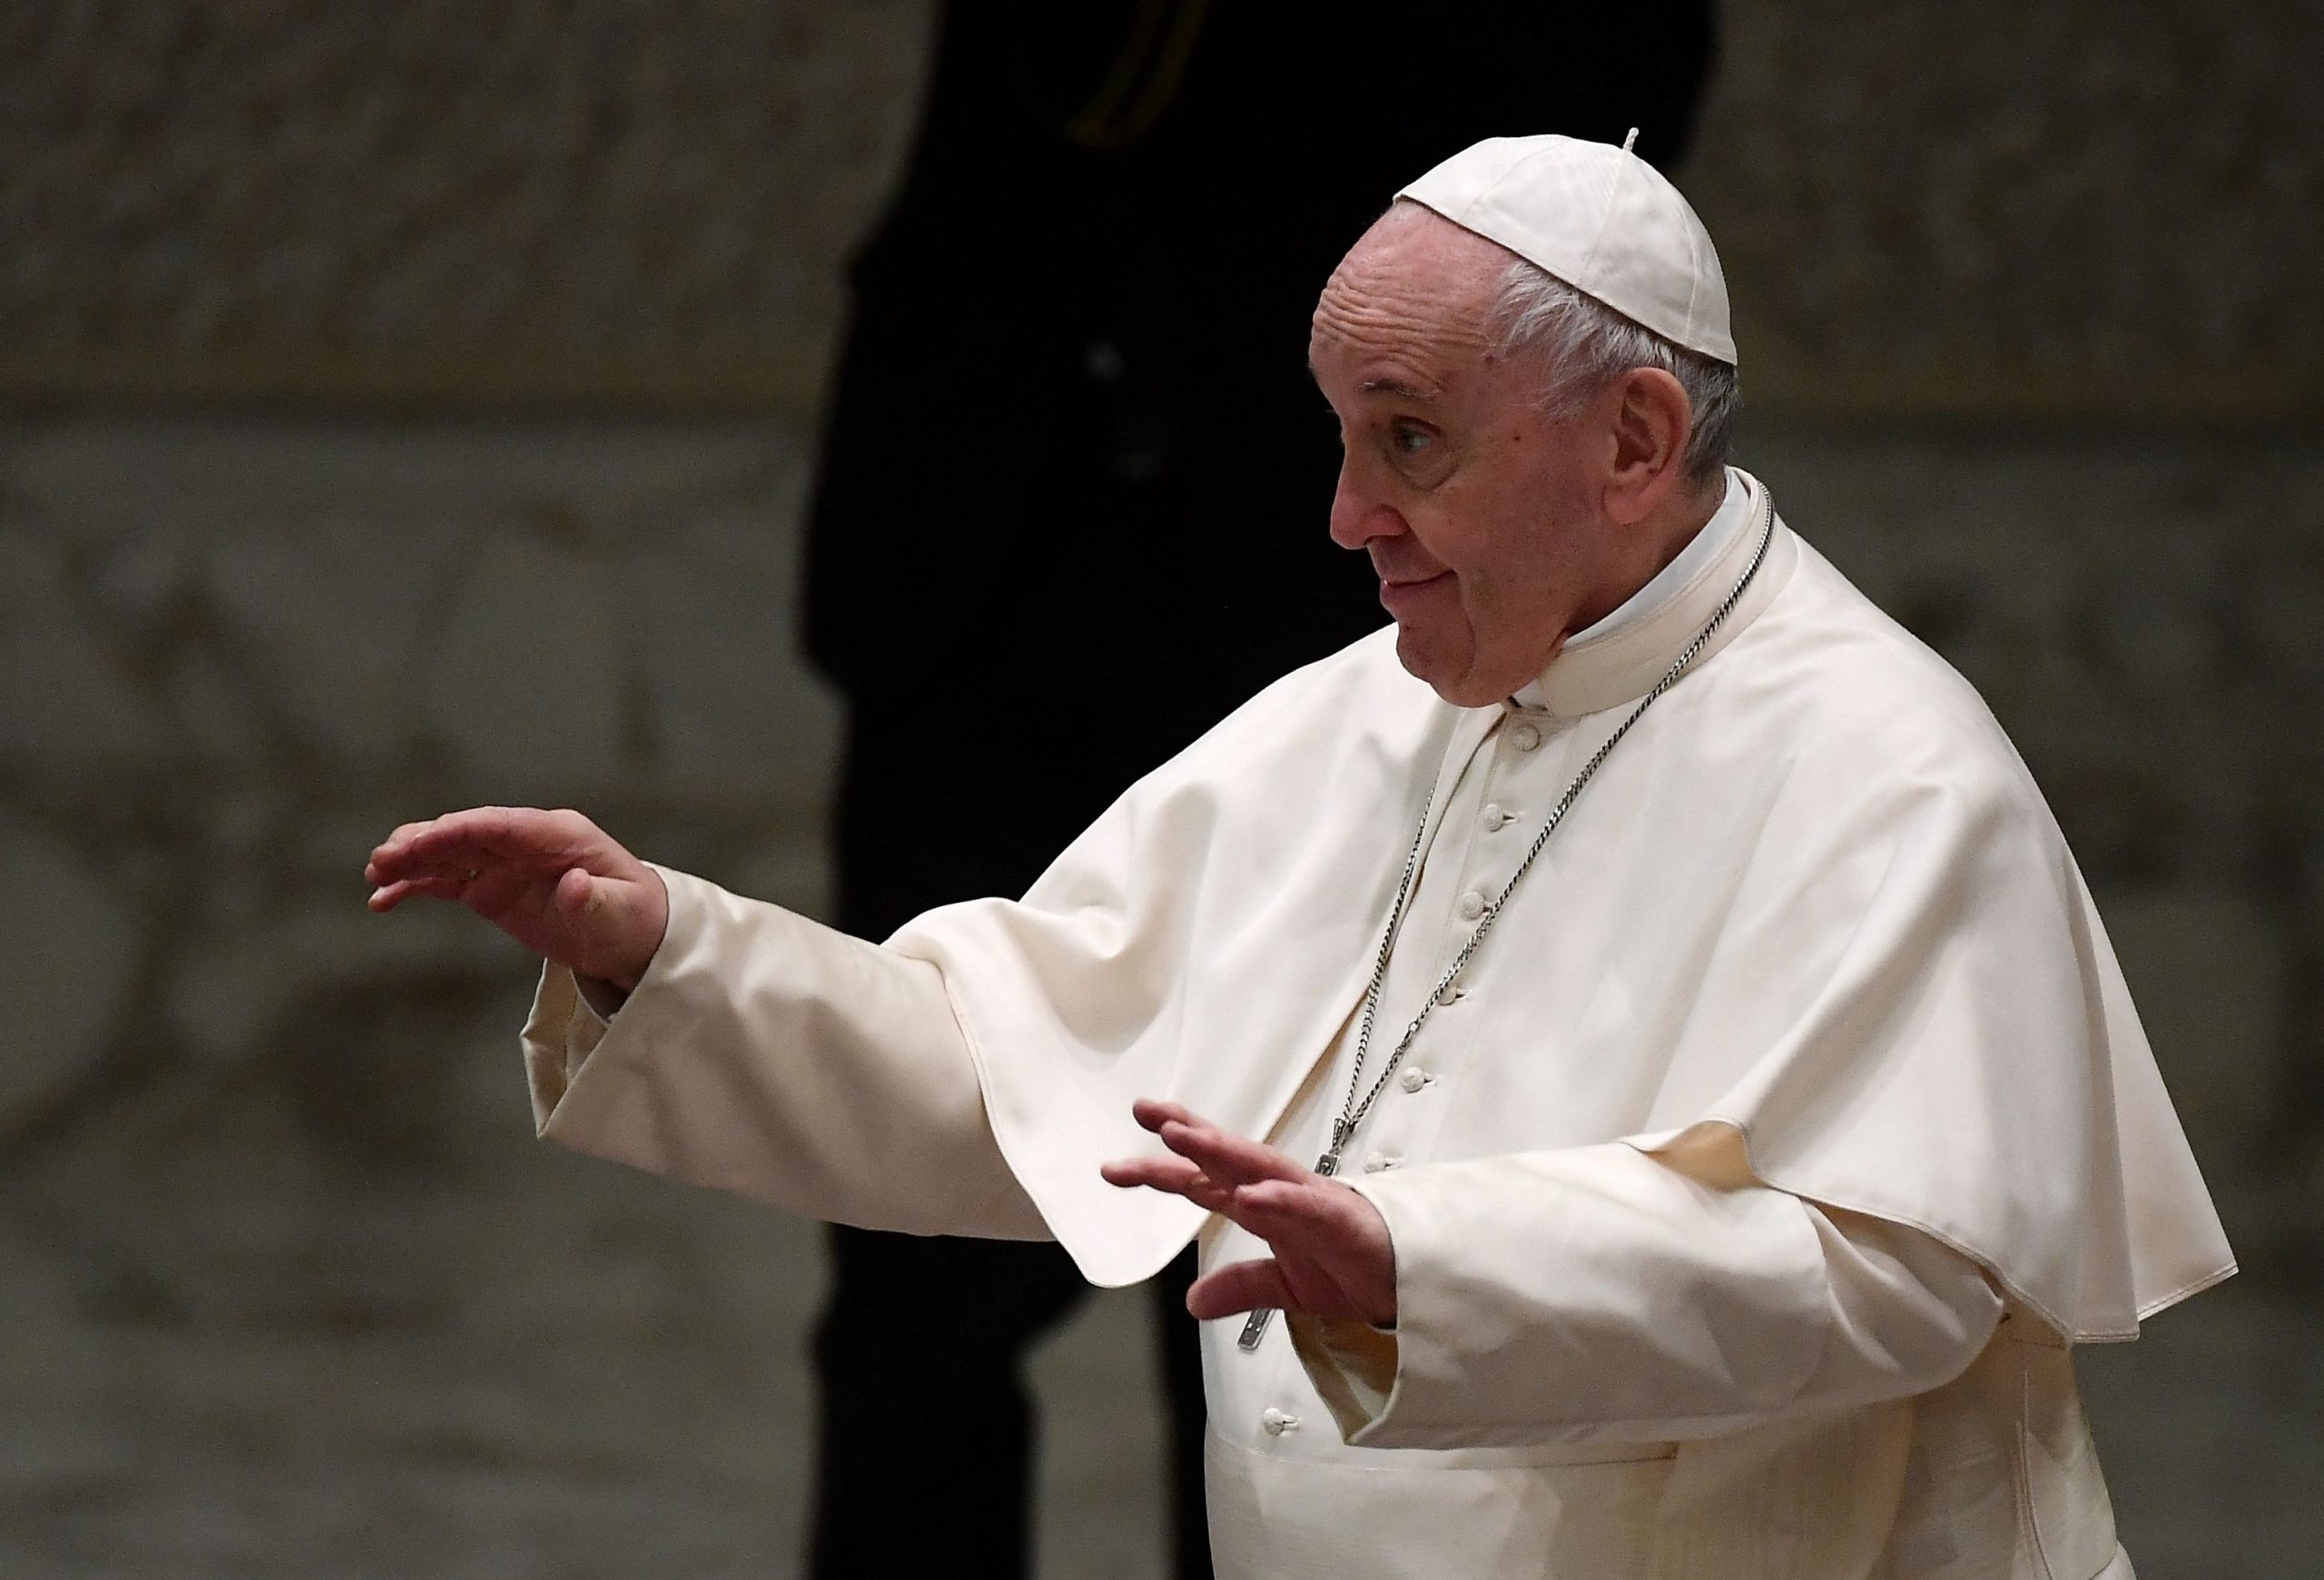 教宗圣诞文告敦促对话 化解国际冲突与疫情疏离